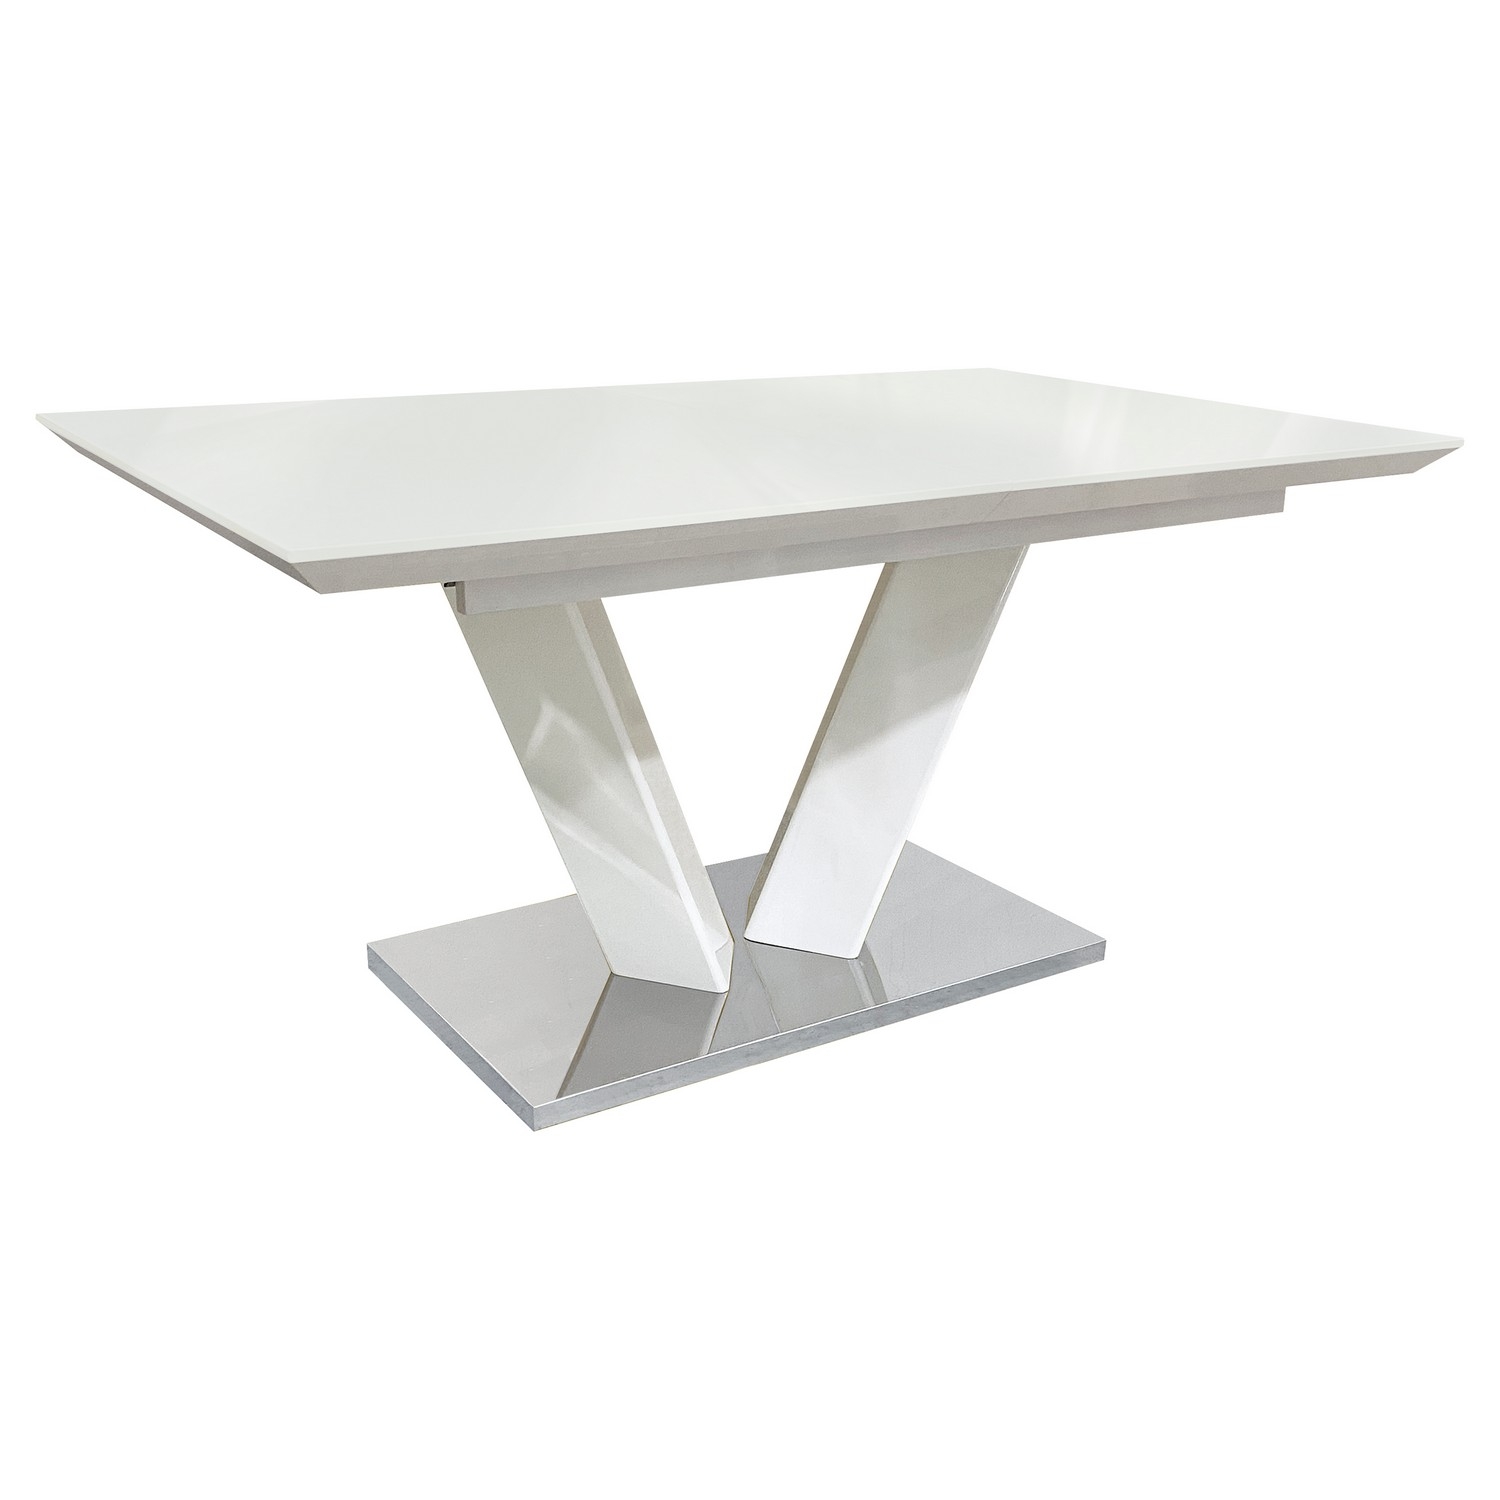 Homelegance Yannis Dining Table - High Gloss White/Chrome